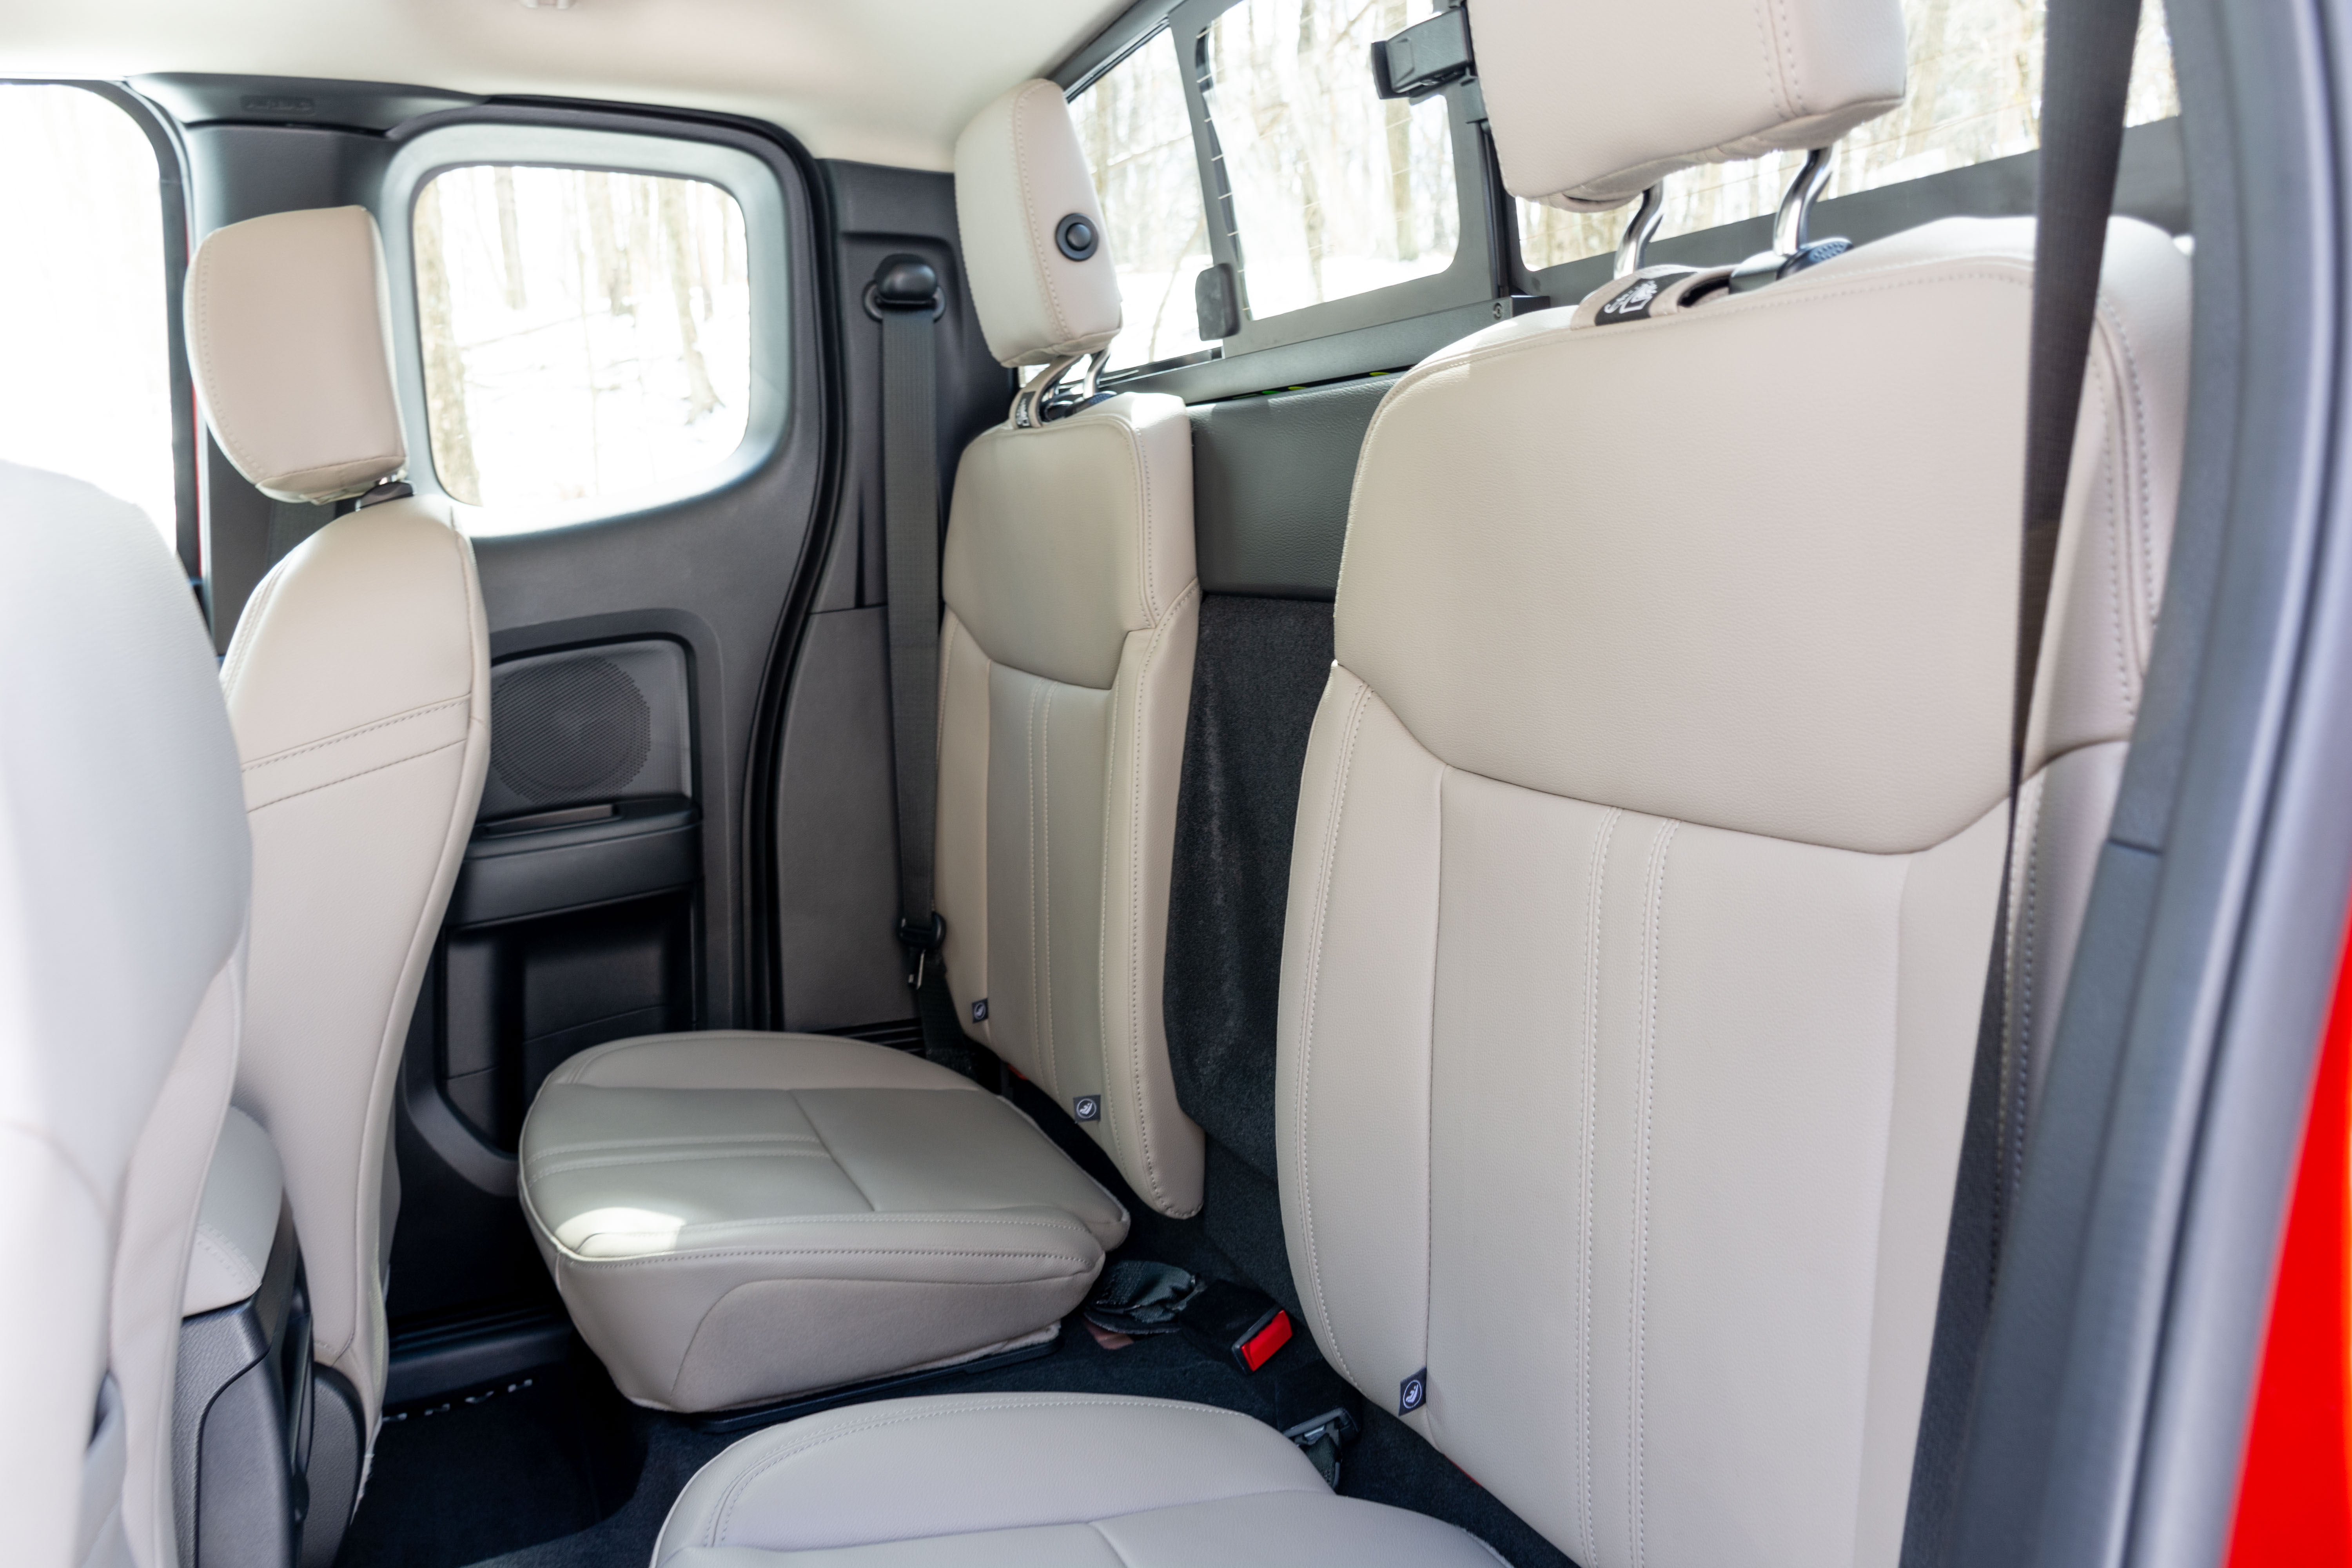 Ford Ranger Extra Cab interior model